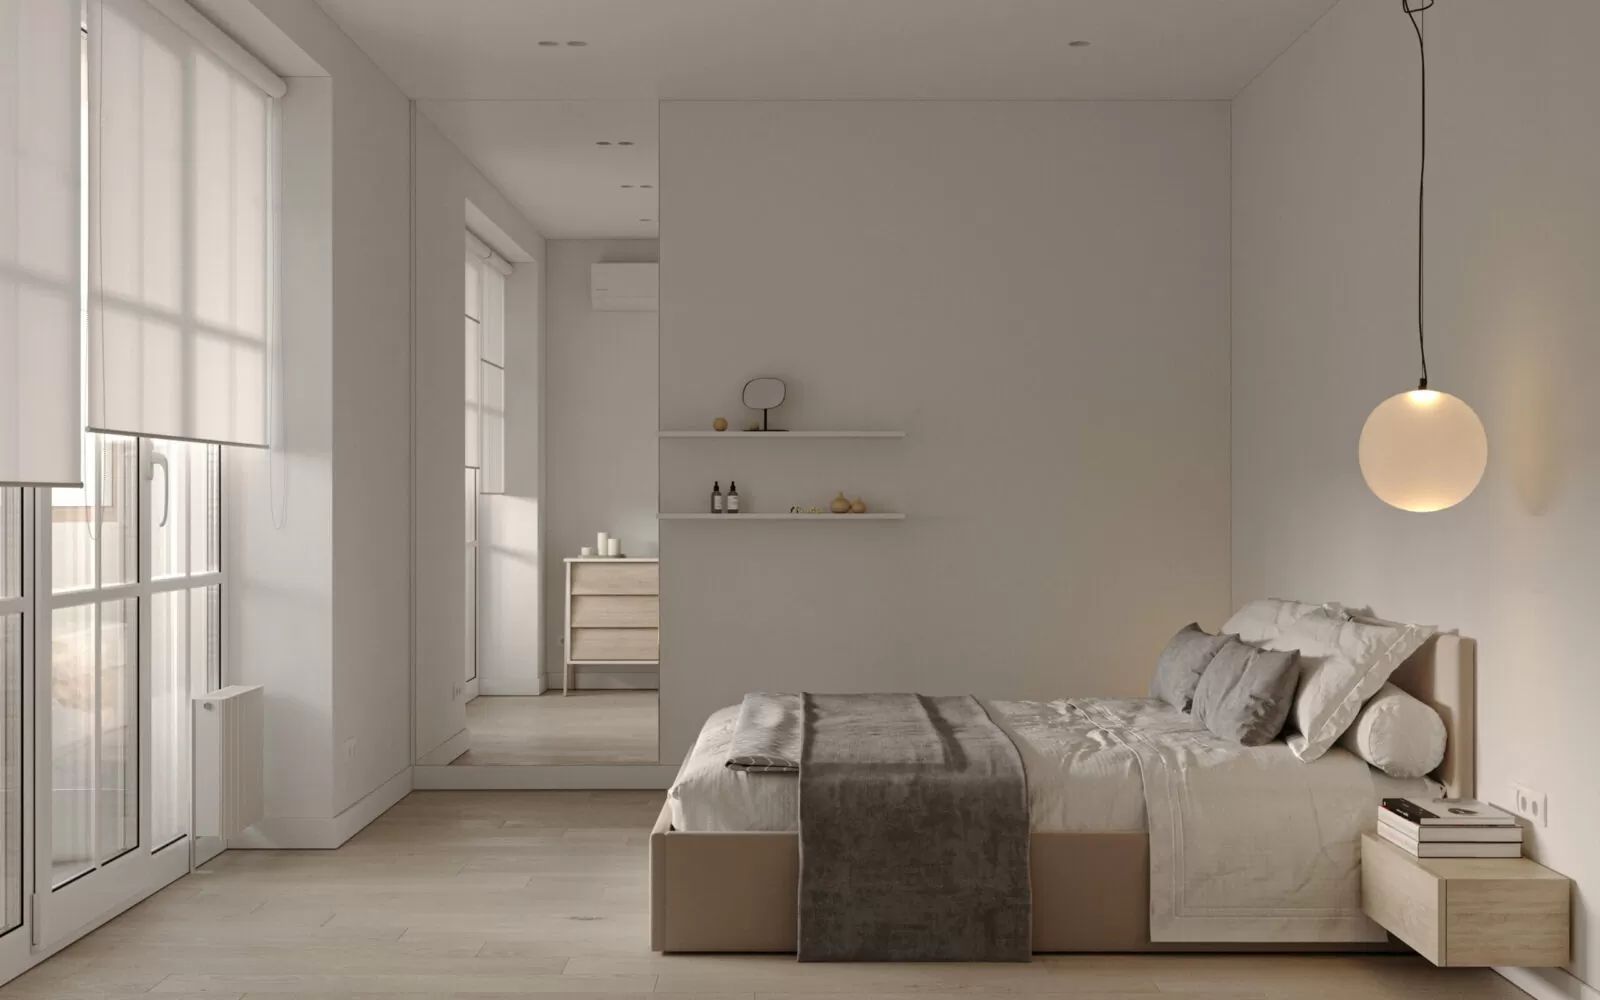 Nota interior | спальня в светлых теплых оттенках минимализм